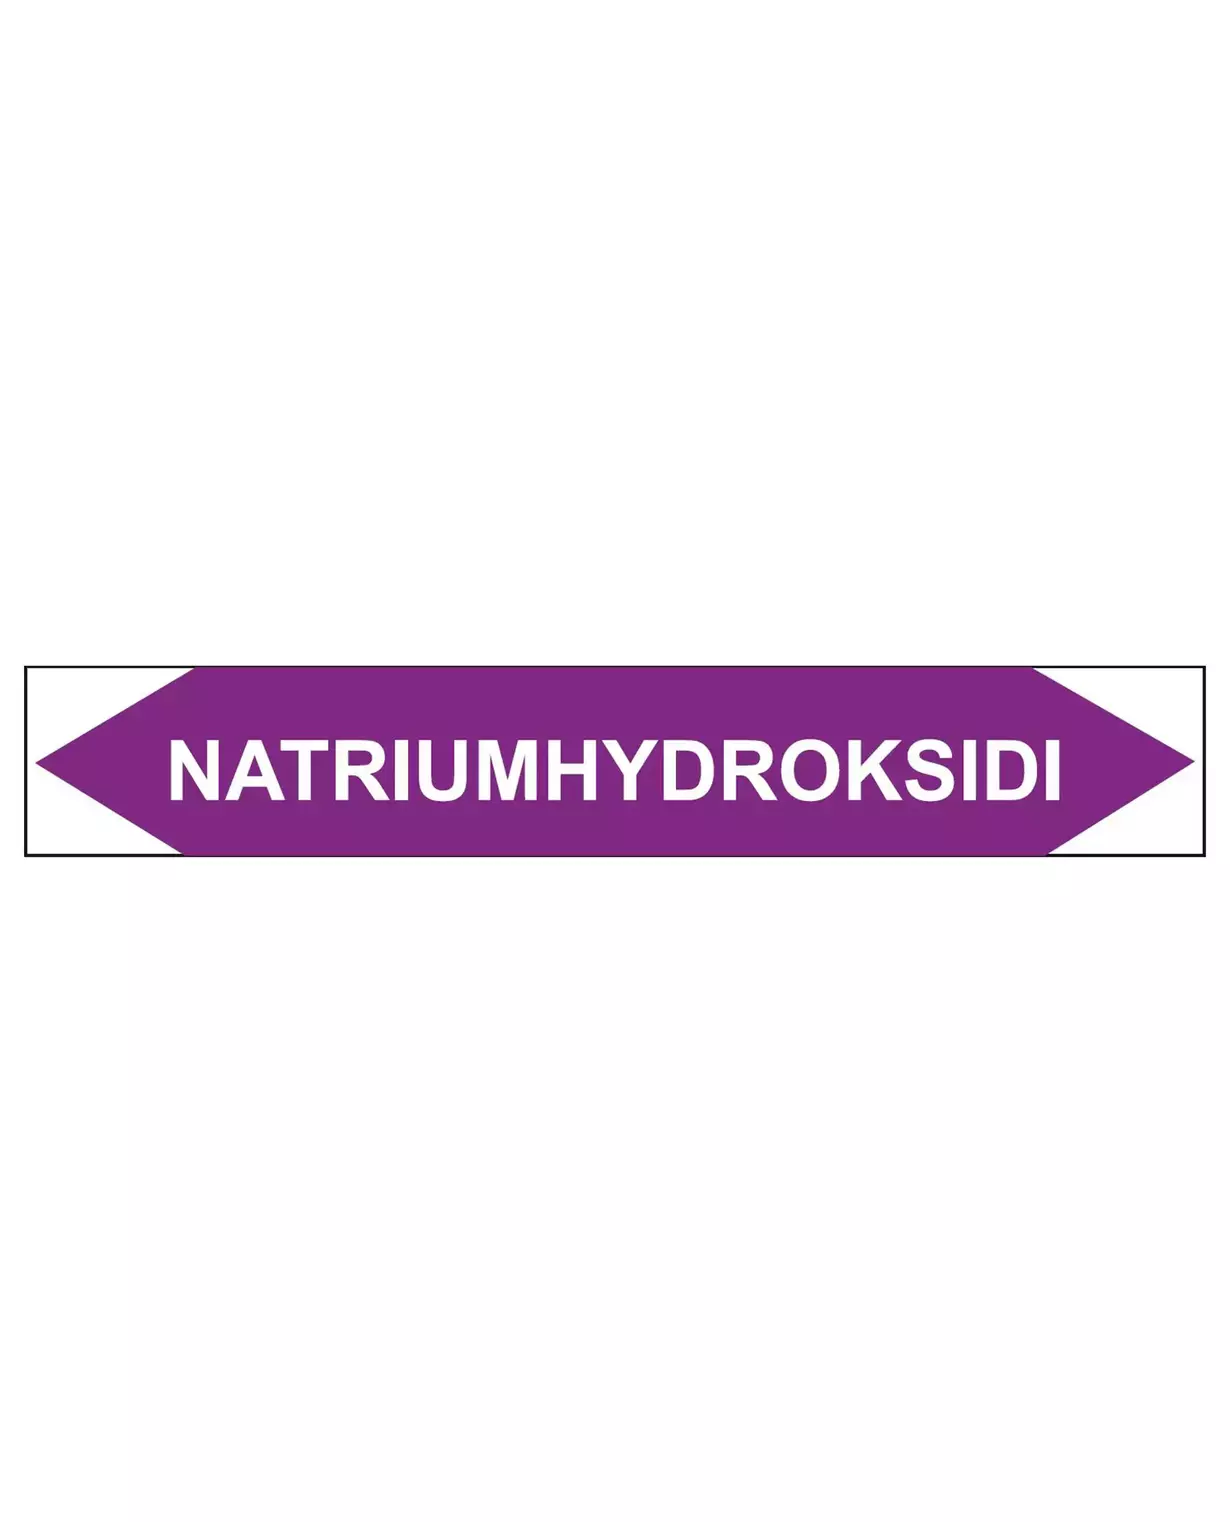 Natriumhydroksidi, 250x40 mm